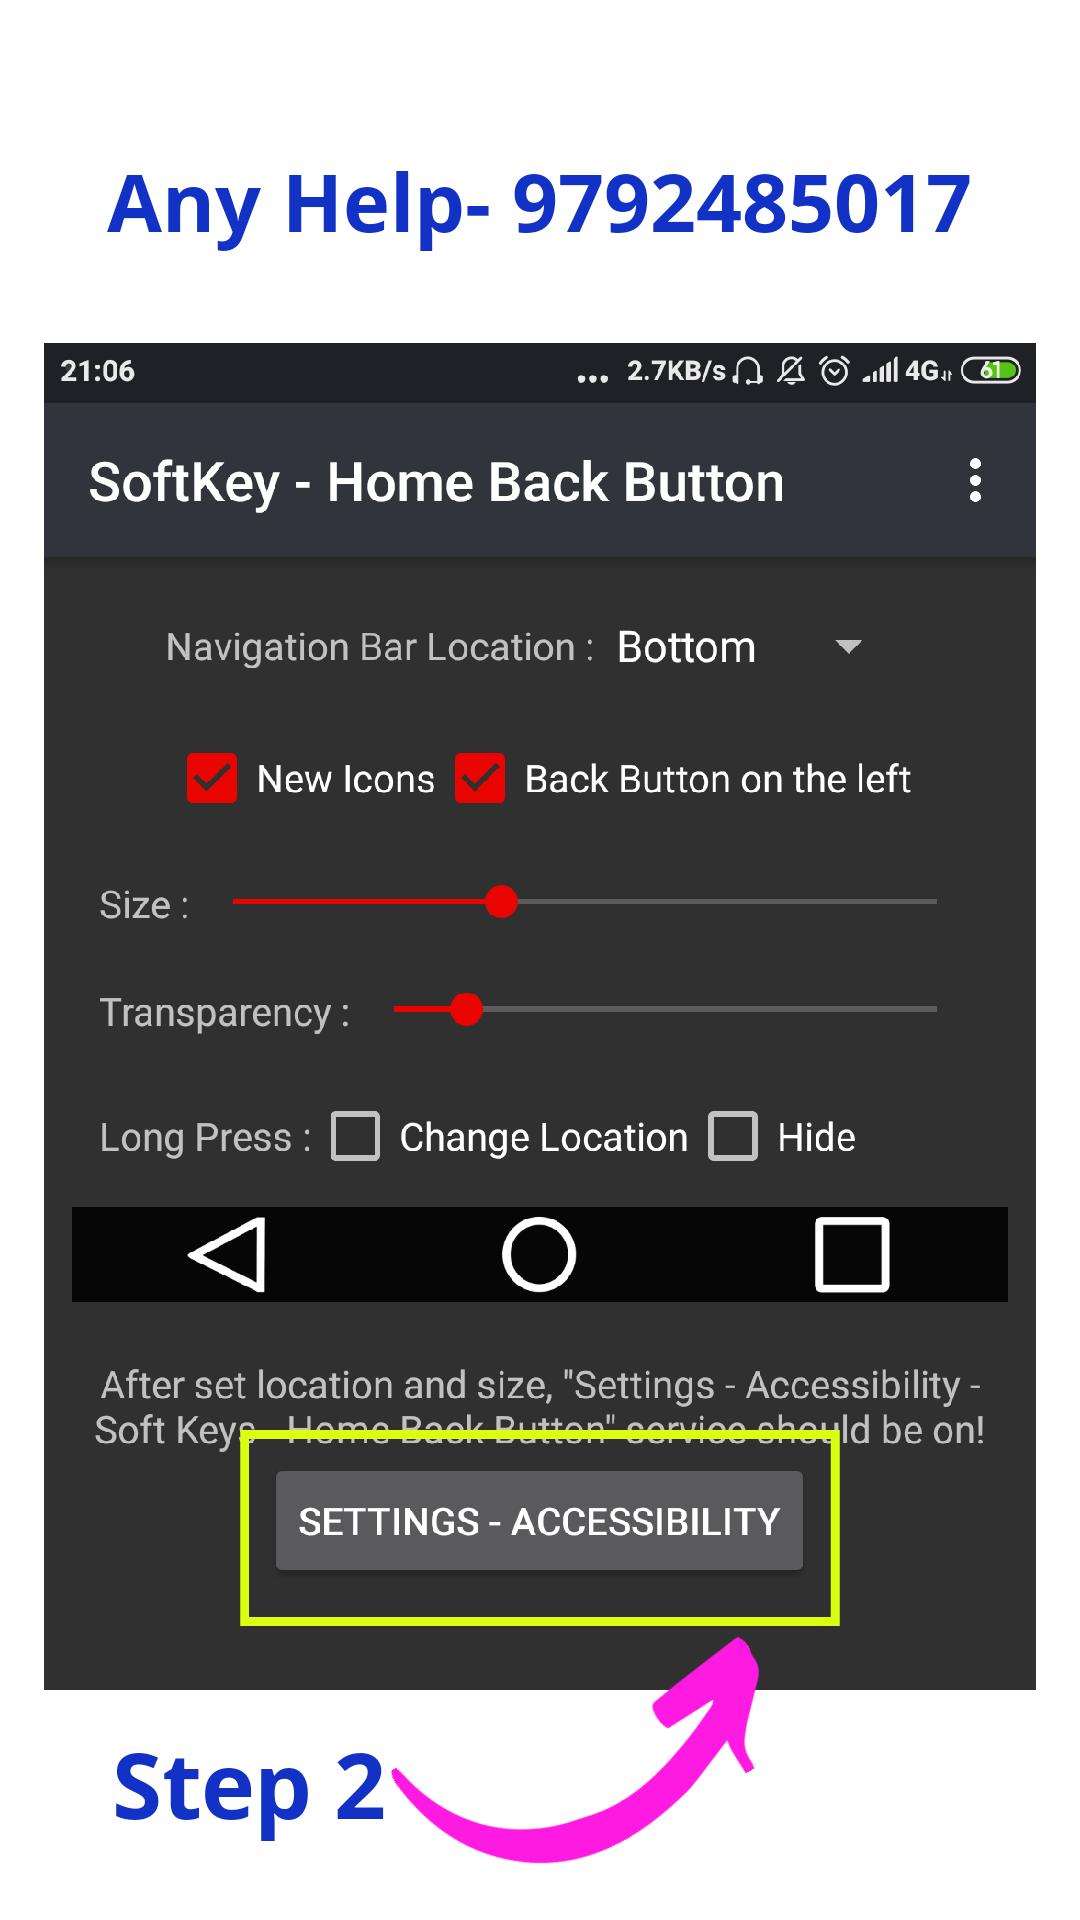 3 button navigation bar